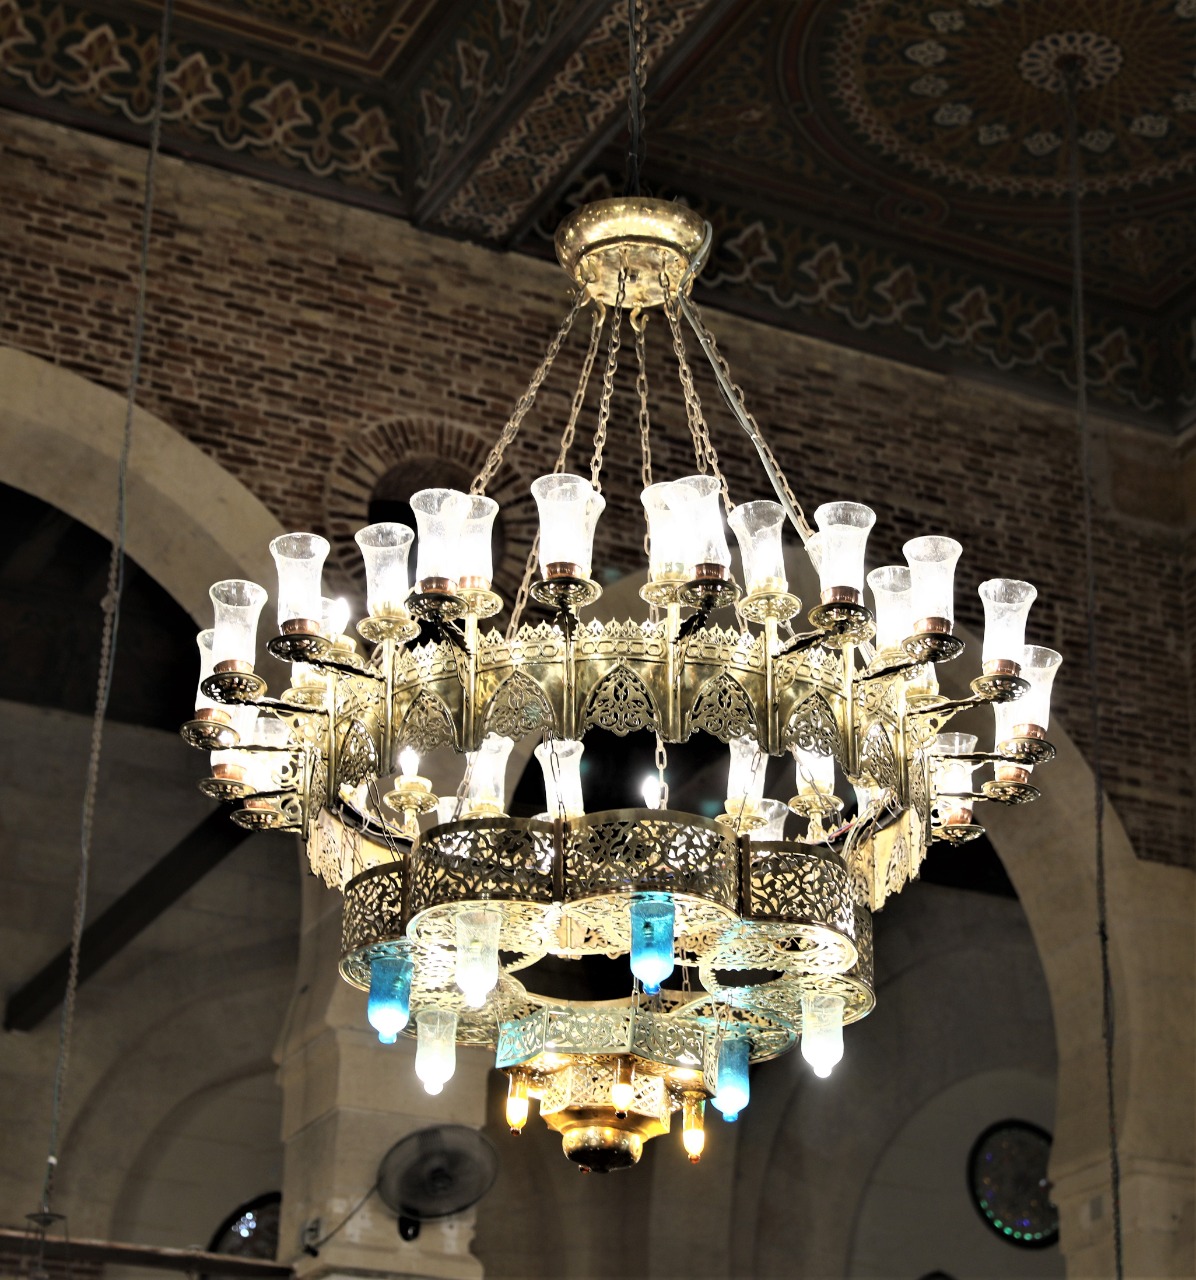 خضع المسجد لعمليات ترميم في عصور مختلفة (وزارة الثقافة المصرية)